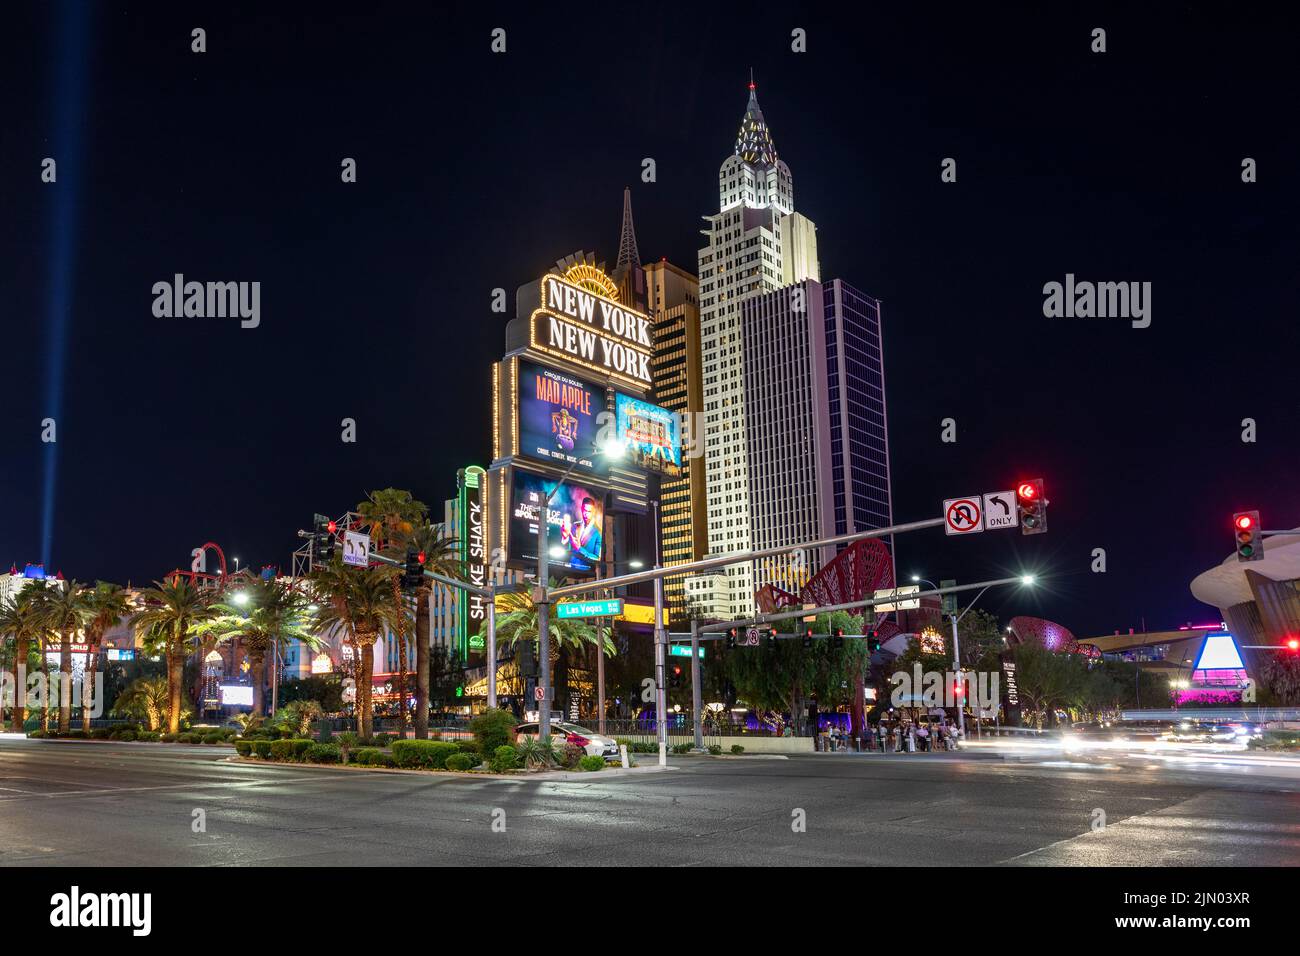 Las Vegas, USA - May 23, 2022:   New York-New York located on the Las Vegas Strip in Las Vegas by night with neon light. Stock Photo